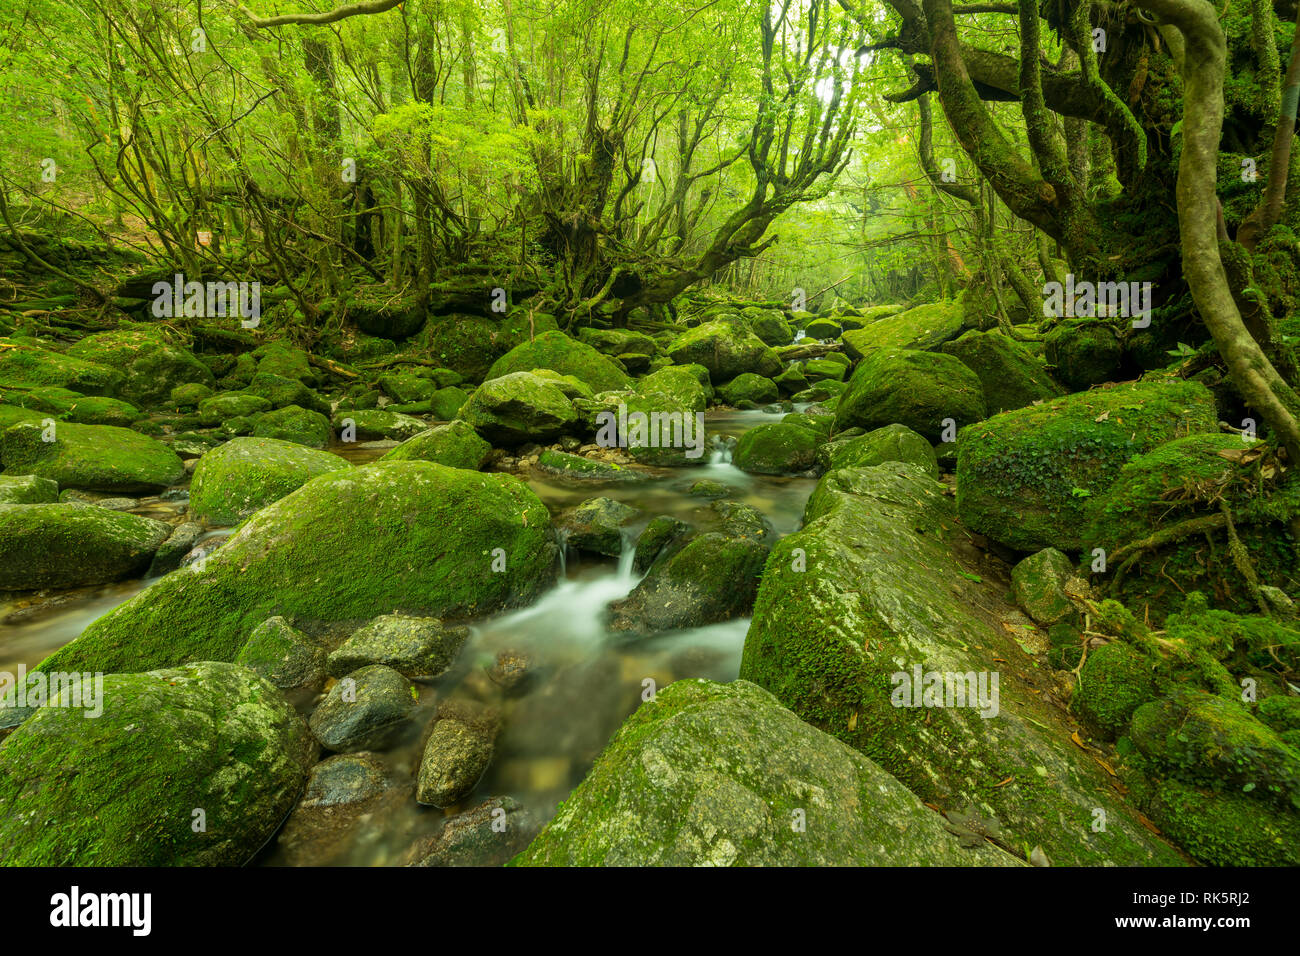 Lange Belichtung eines kleinen Flusses durch einen Wald fließt. Steine mit Moos bedeckt. Yakushima, Japan. Stockfoto